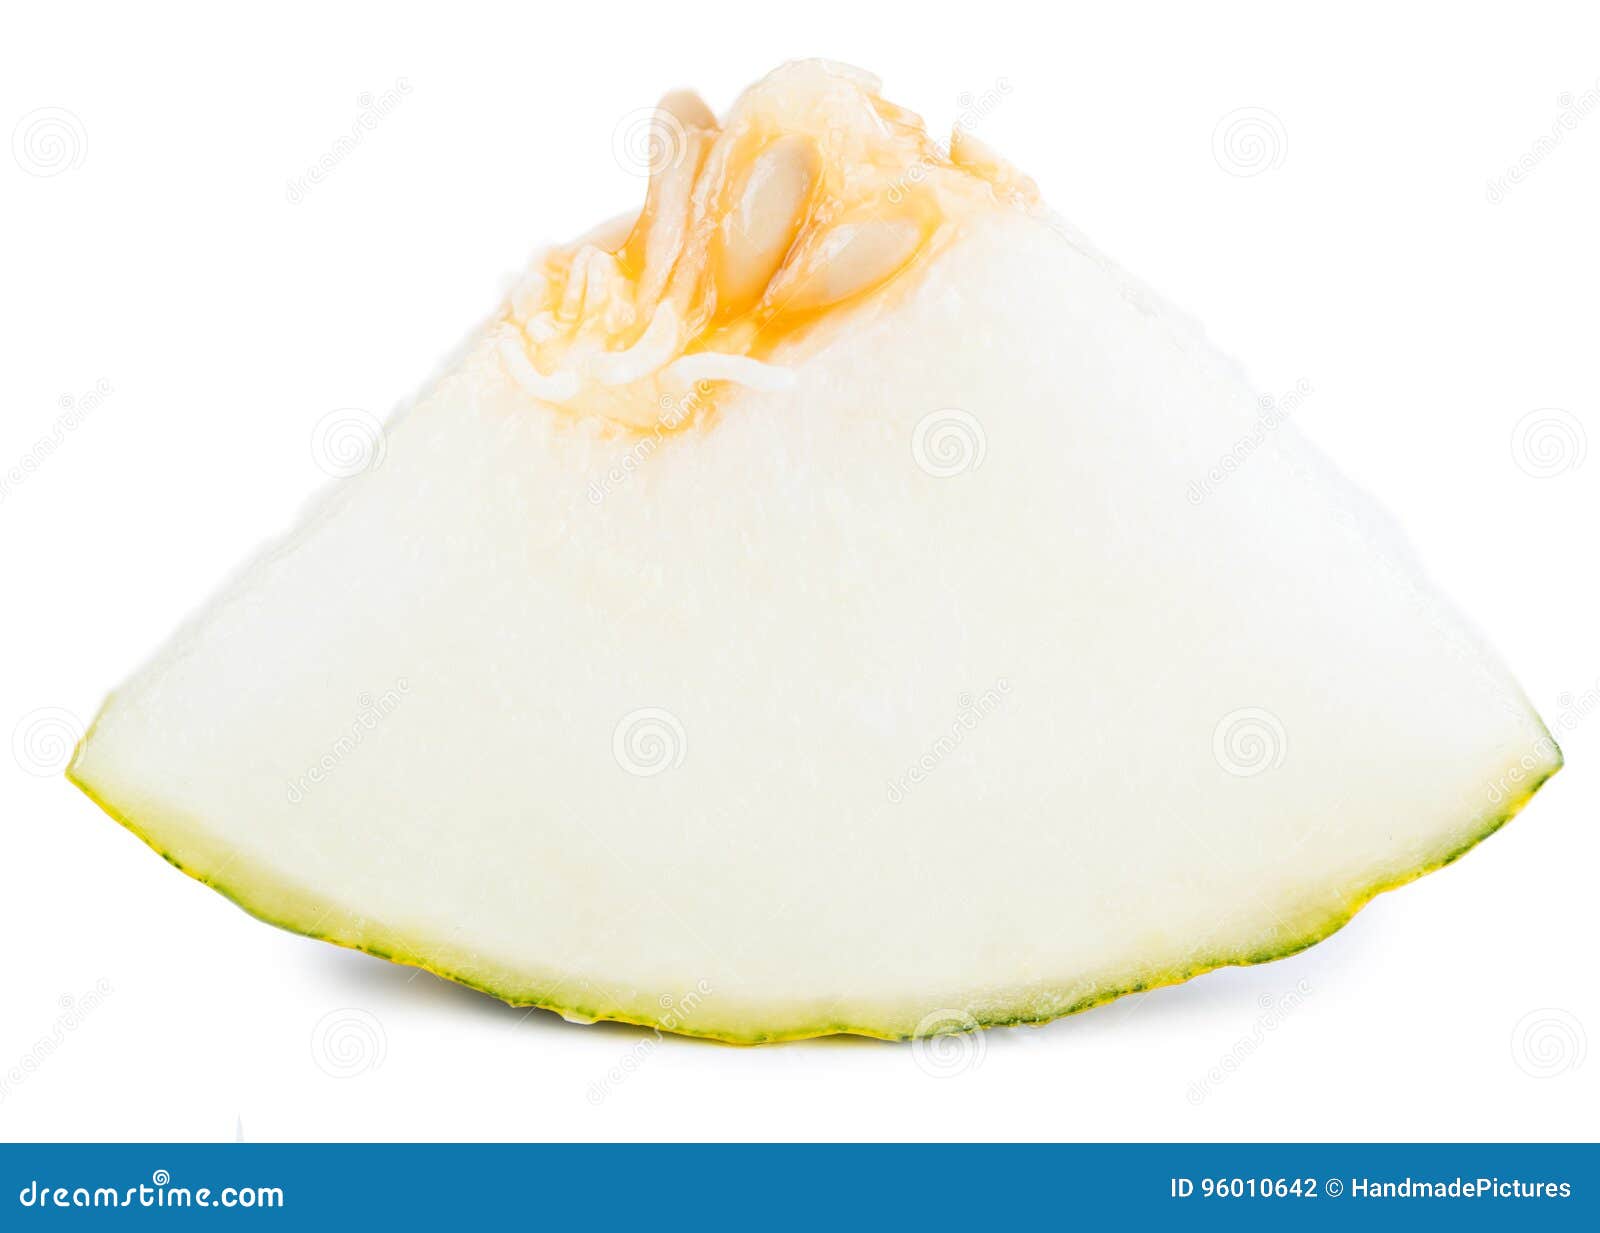 futuro melons  on white